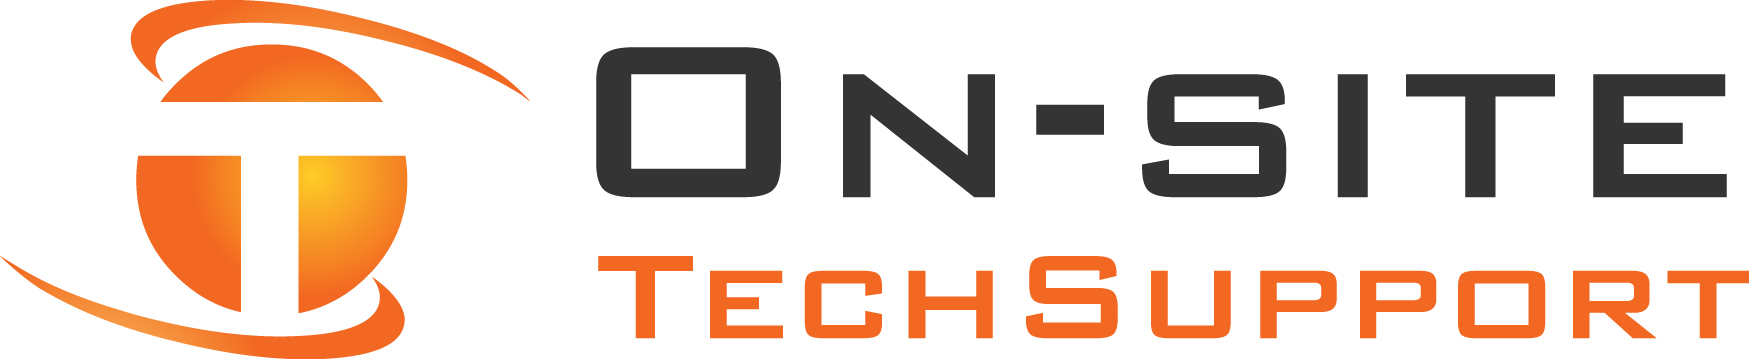 Site Tech Support Logo Wallpaper